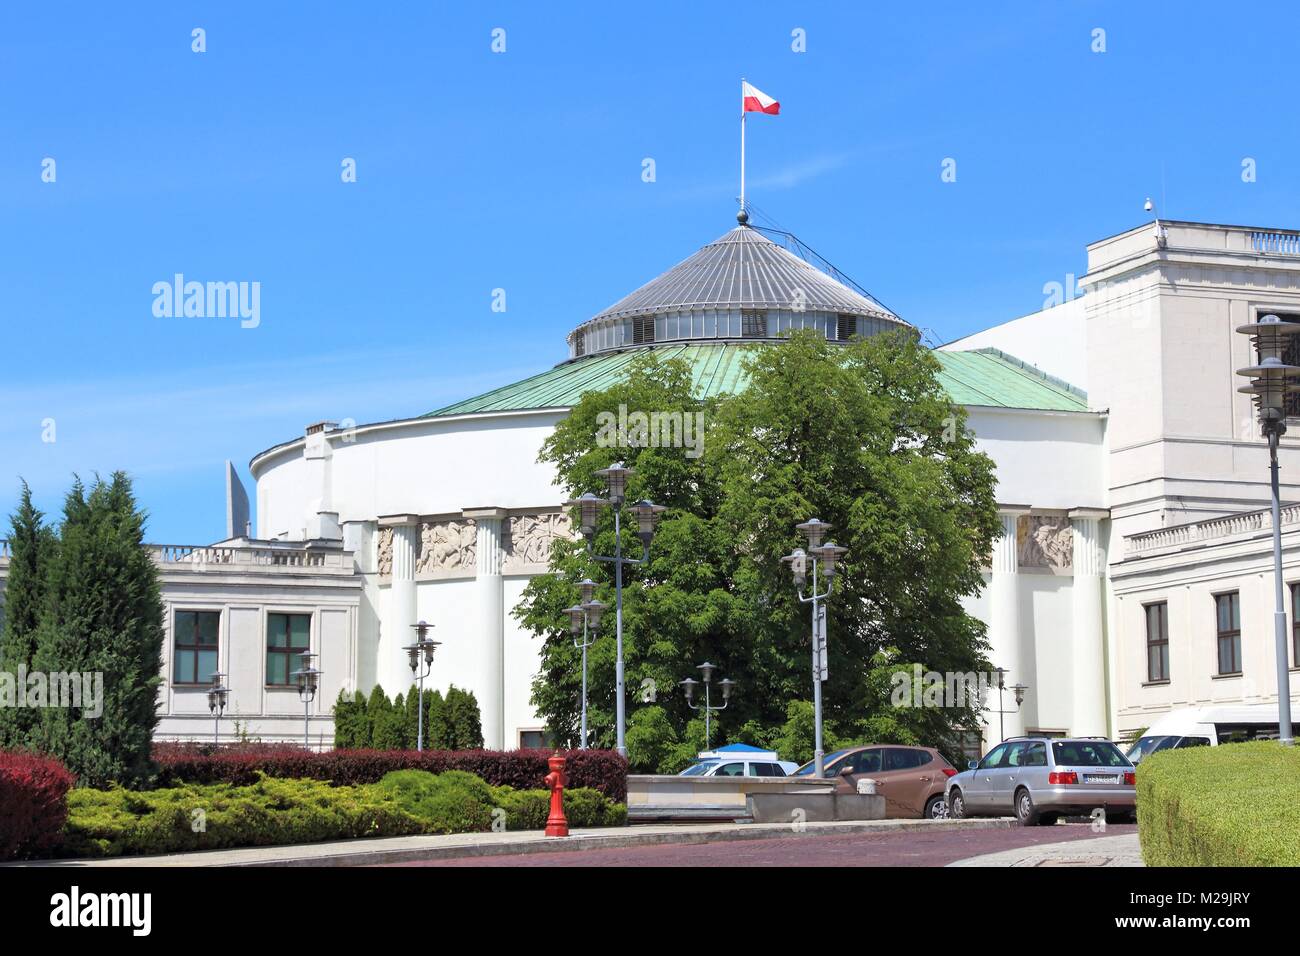 Varsovie, Pologne - 19 juin 2016 : vue extérieure du bâtiment du Parlement (Sejm) à Varsovie, Pologne. Varsovie est la capitale de la Pologne. 1,7 millions de personnes Banque D'Images